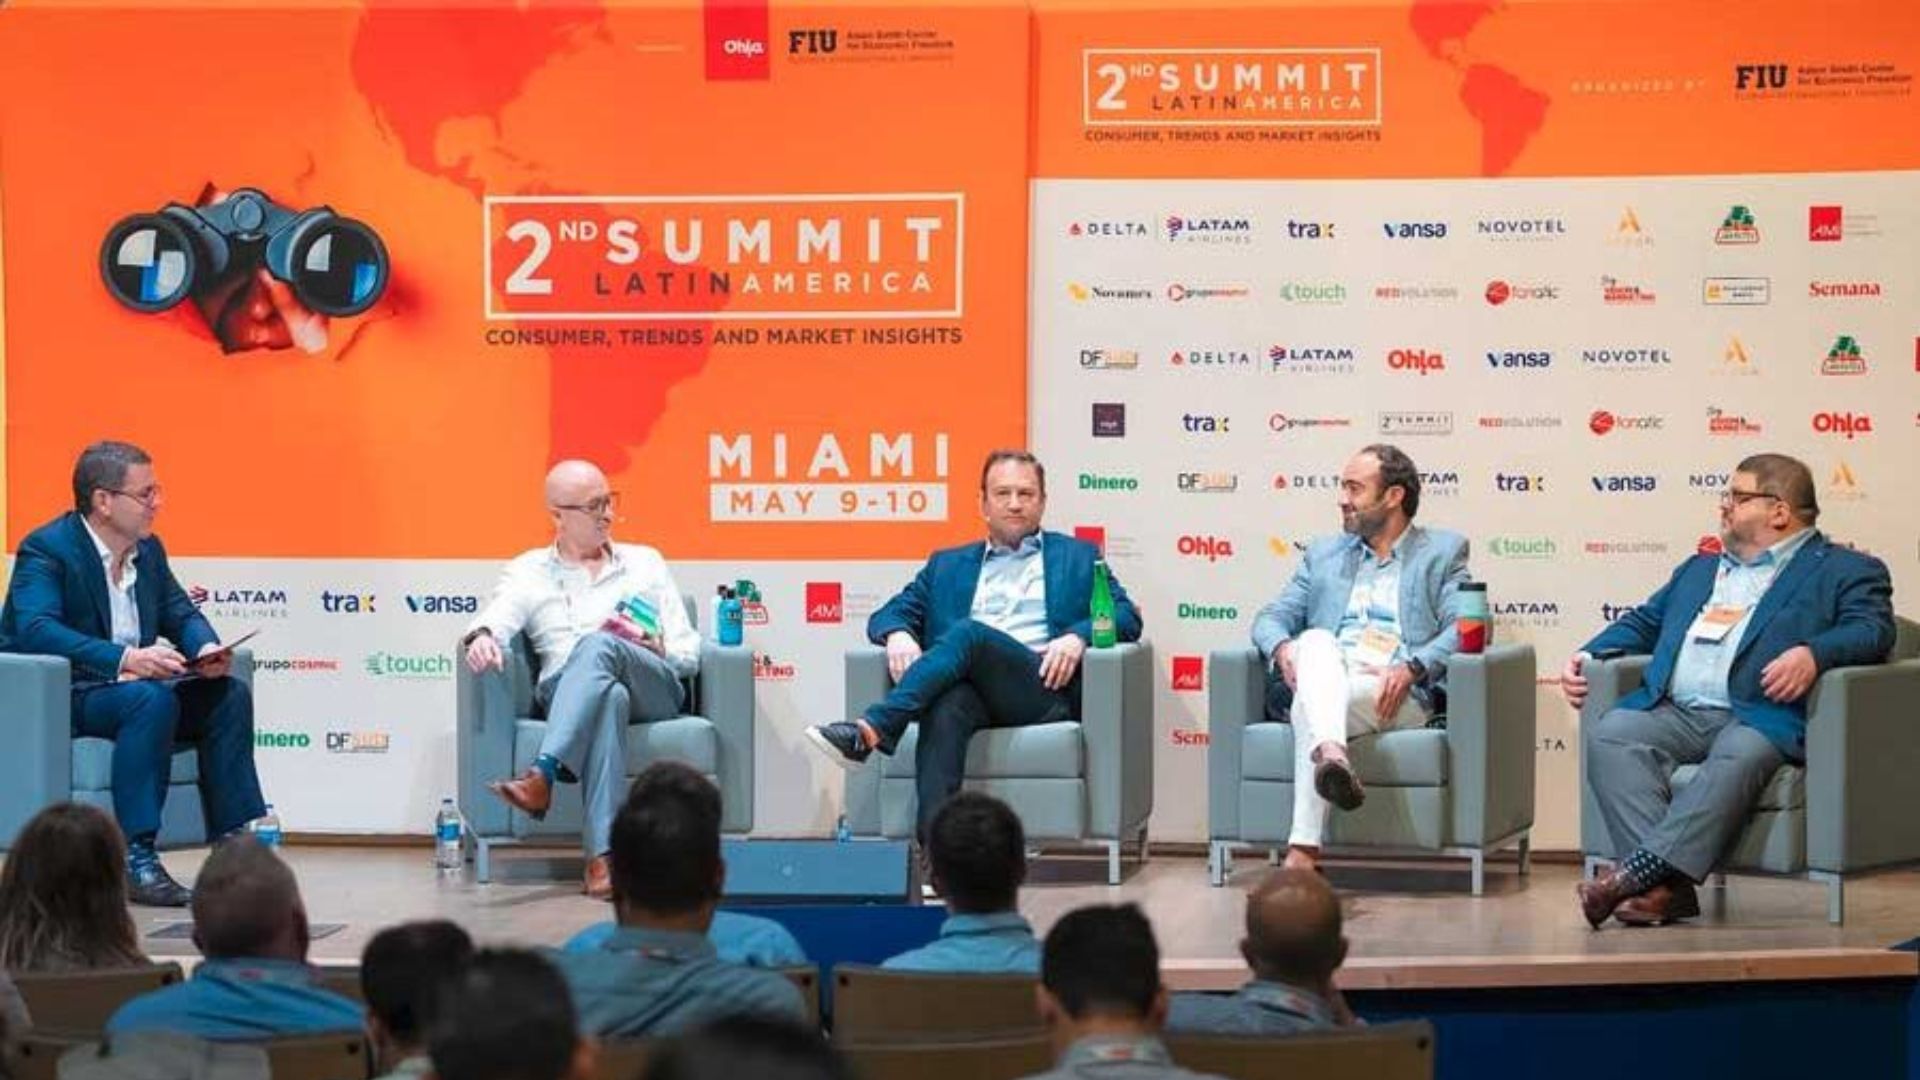 Claves para entender al consumidor latino en Estados Unidos y conquistar el mercado: Insights del 2nd Summit Latin America